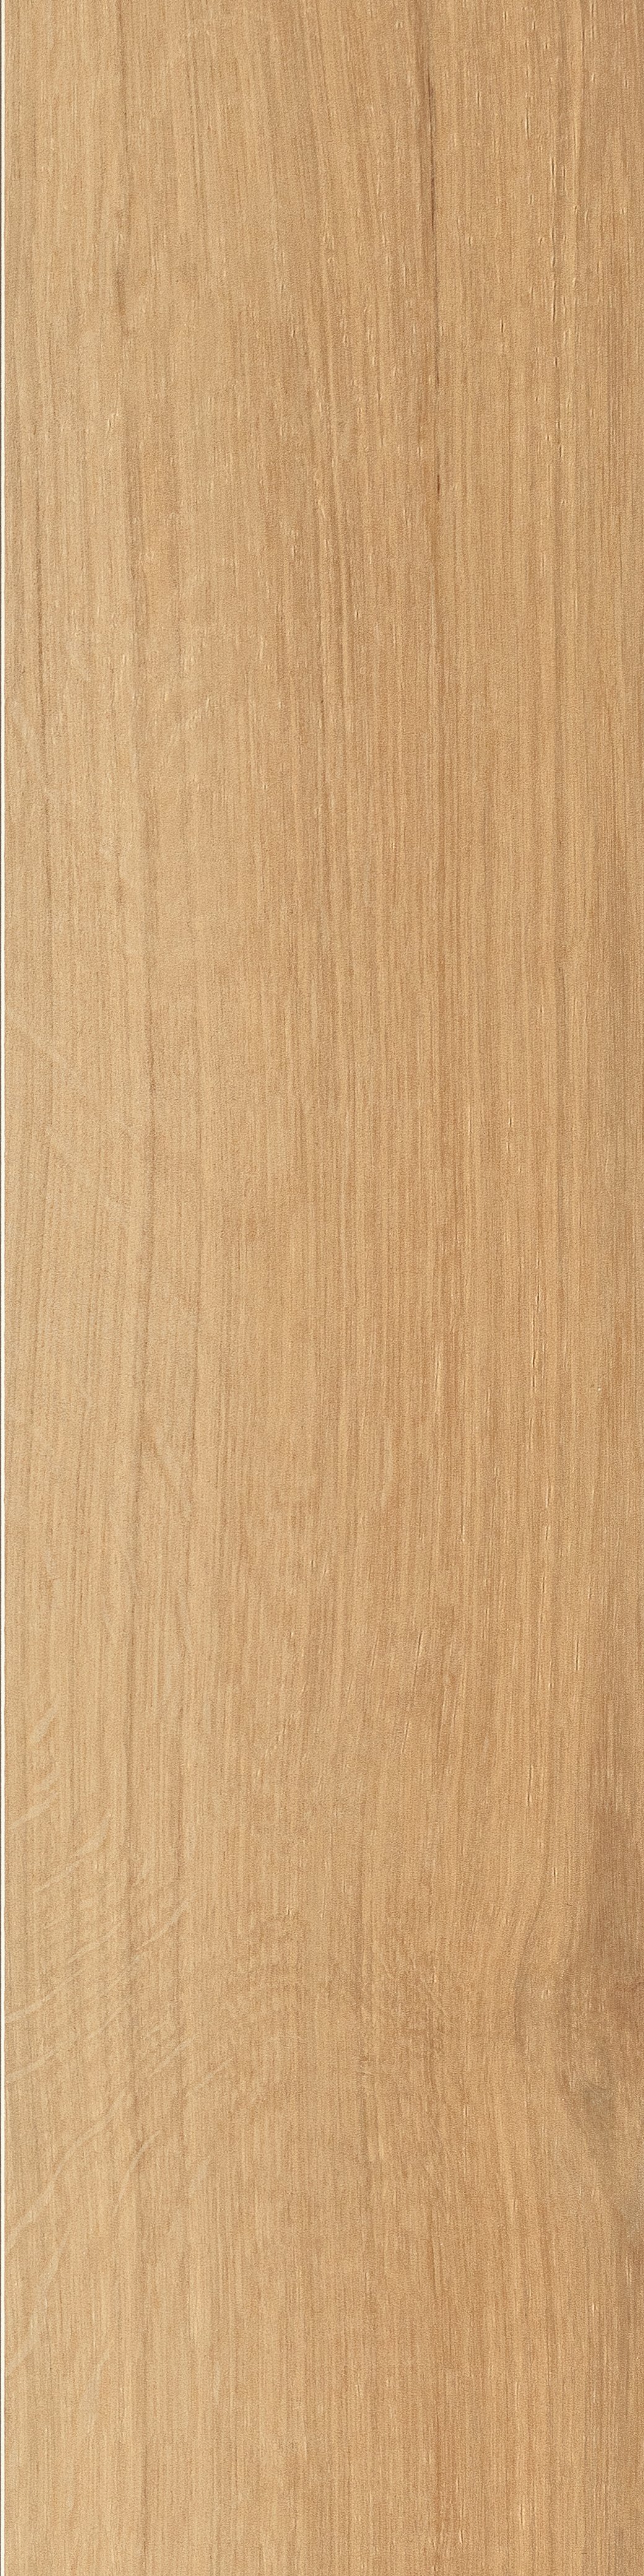 Terrassenplatte Holzoptik junge Eiche 30x120 cm "Rovere Naturale" Feinsteinzeug 1,9 cm rektifiziert 